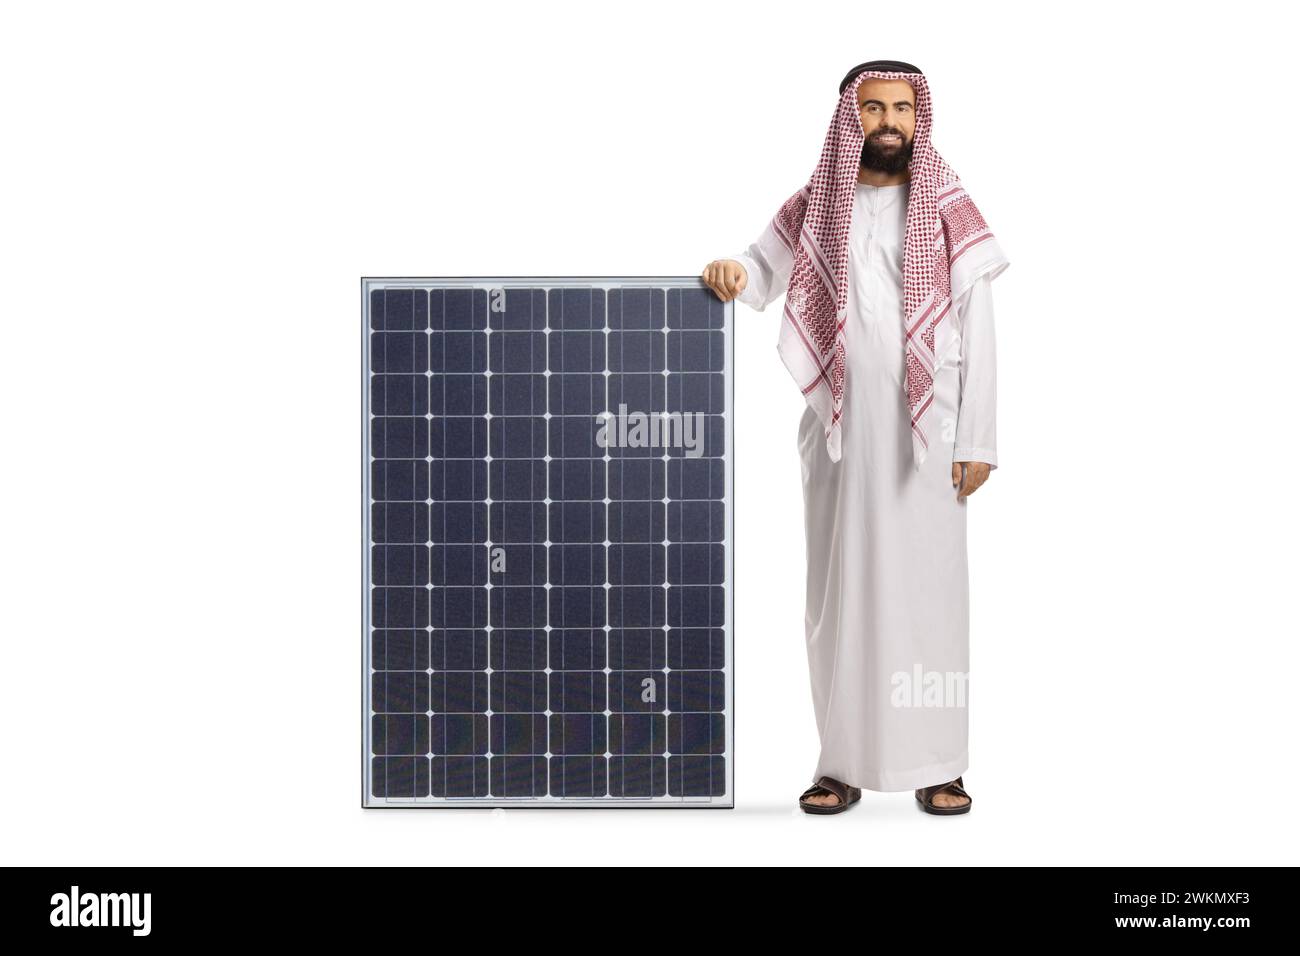 Homme arabe saoudien avec un panneau solaire isolé sur fond blanc Banque D'Images